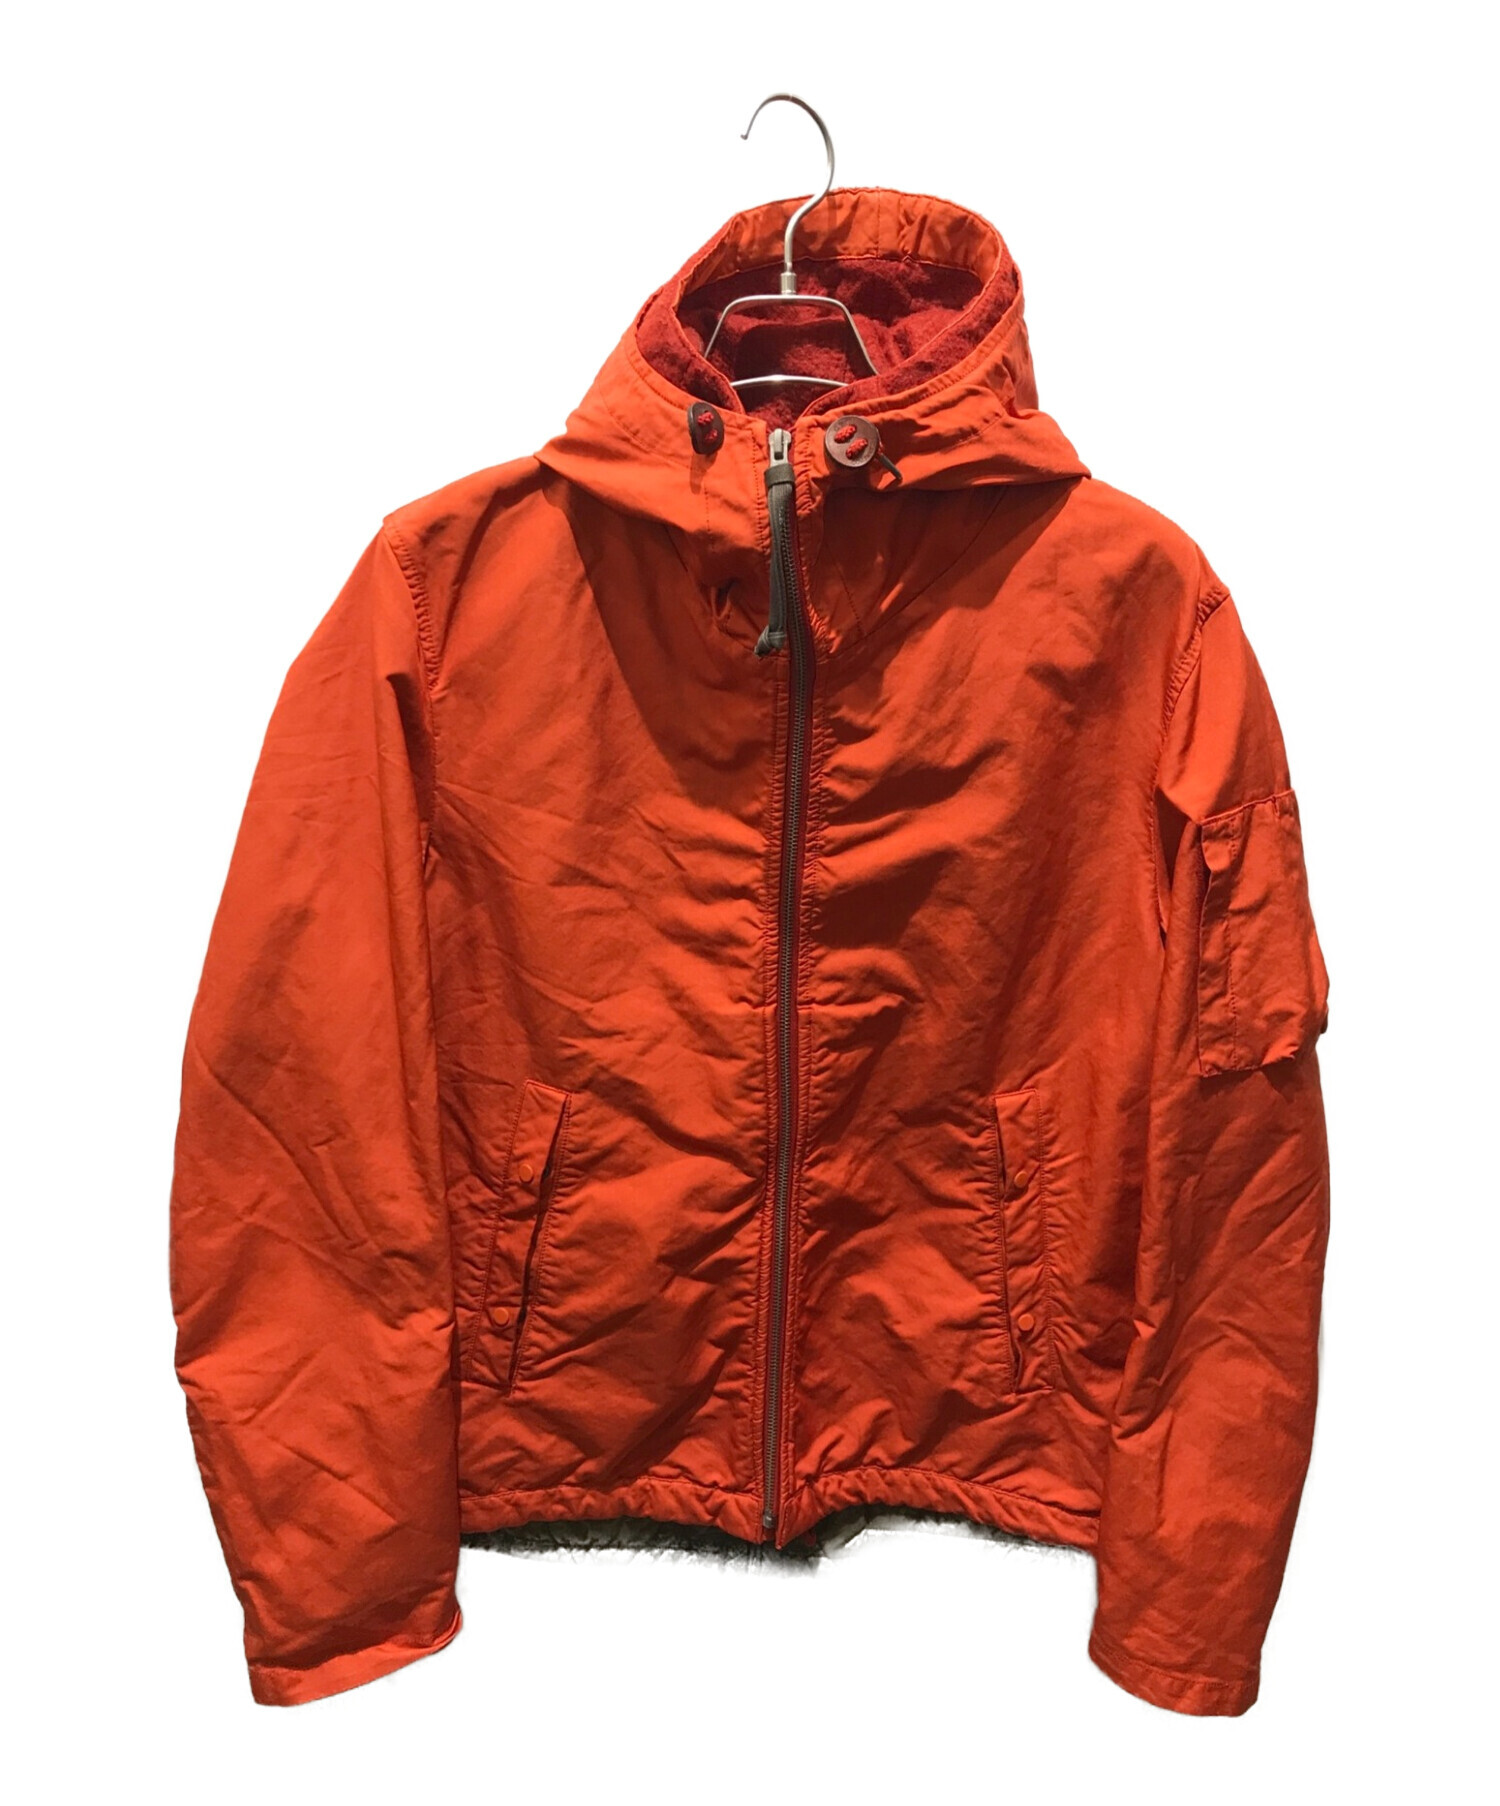 C.P COMPANY (シーピーカンパニー) レイヤードジャケット オレンジ×ブラウン サイズ:48